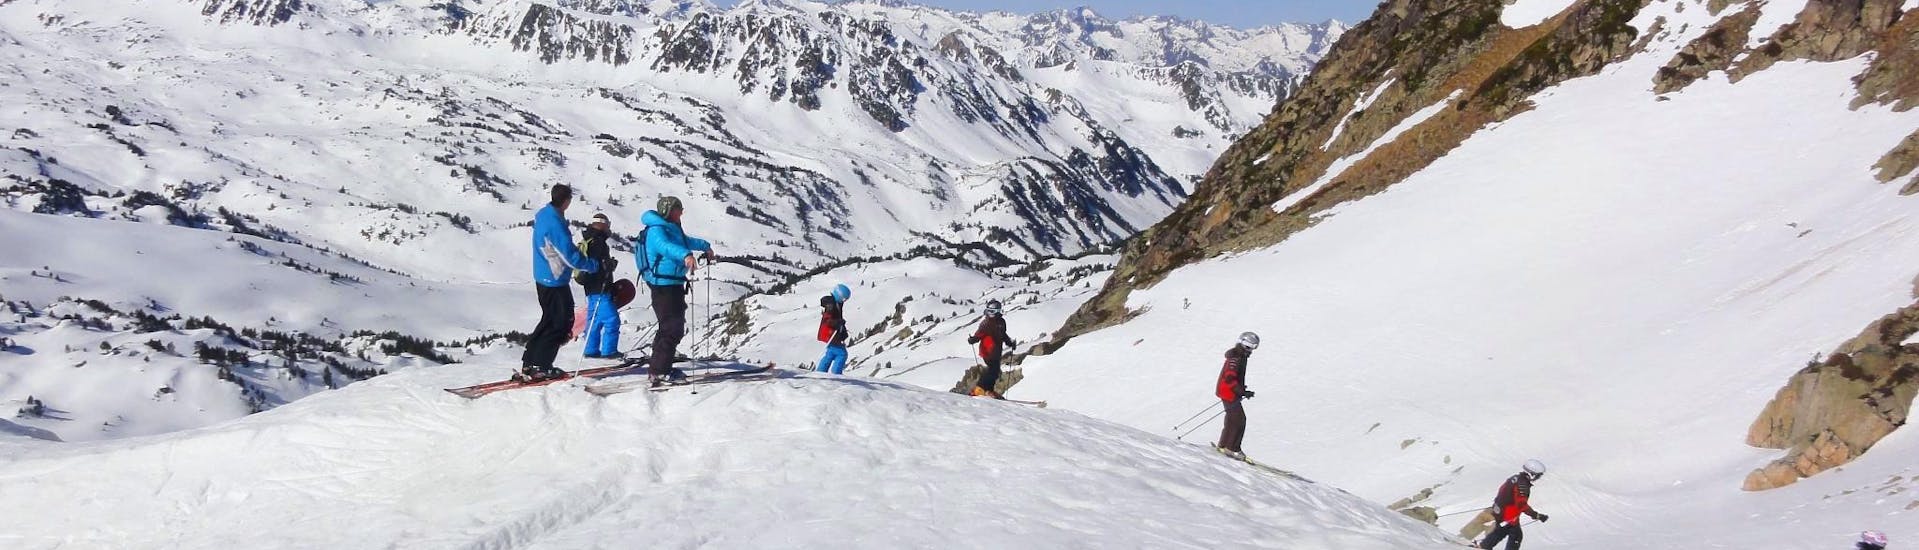 Los niños están esquiando desde la cima de las pistas durante sus clases de esquí para niños (5-15 años) - Con experiencia con la escuela de esquí ESI Ecoloski Barèges.